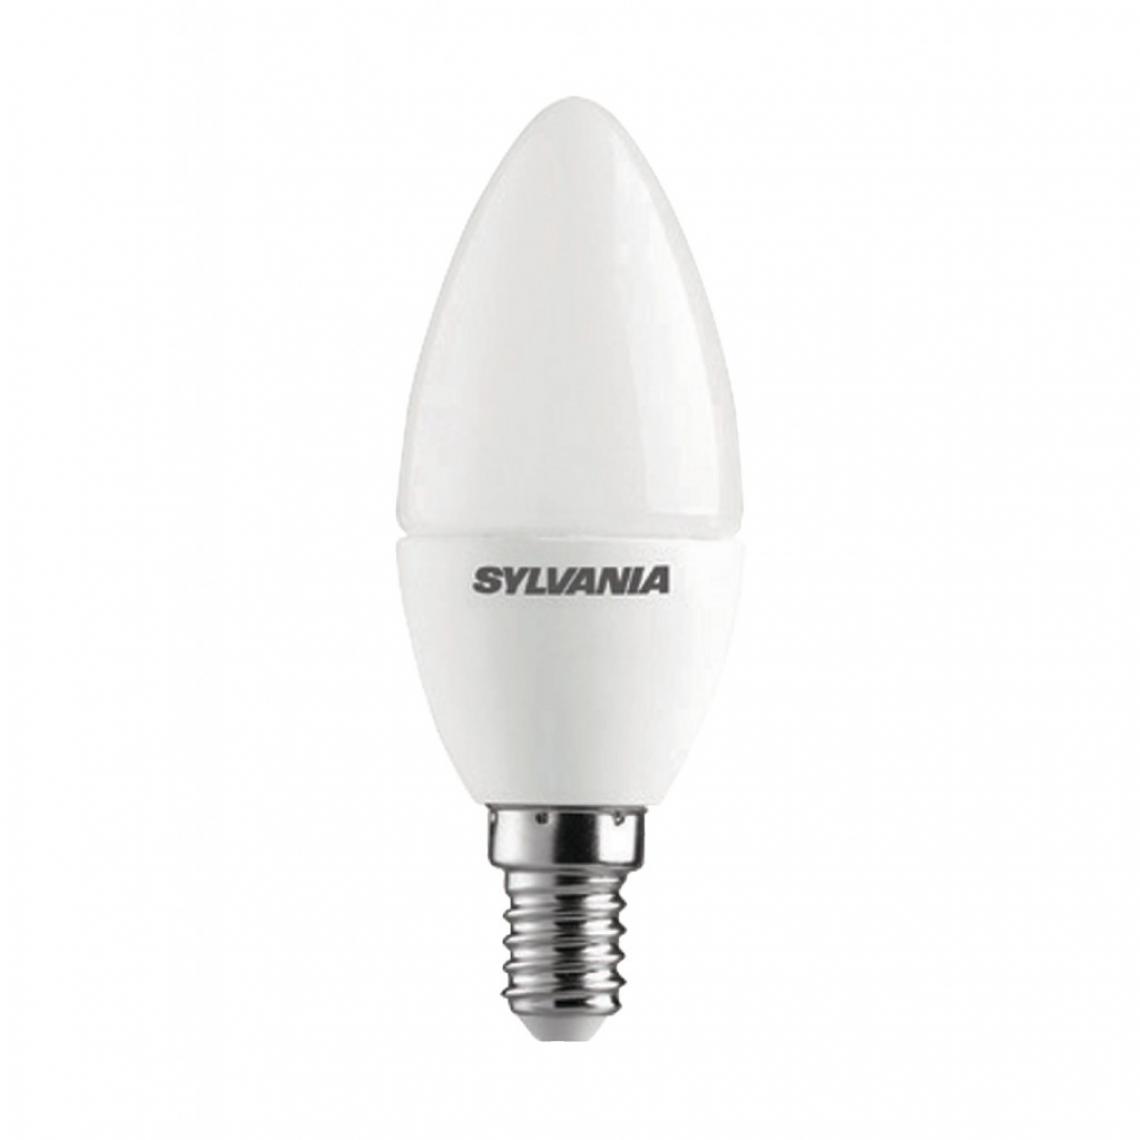 Alpexe - Ampoule LED E14 Bougie 6.5 W 470 lm 2700 K - Ampoules LED